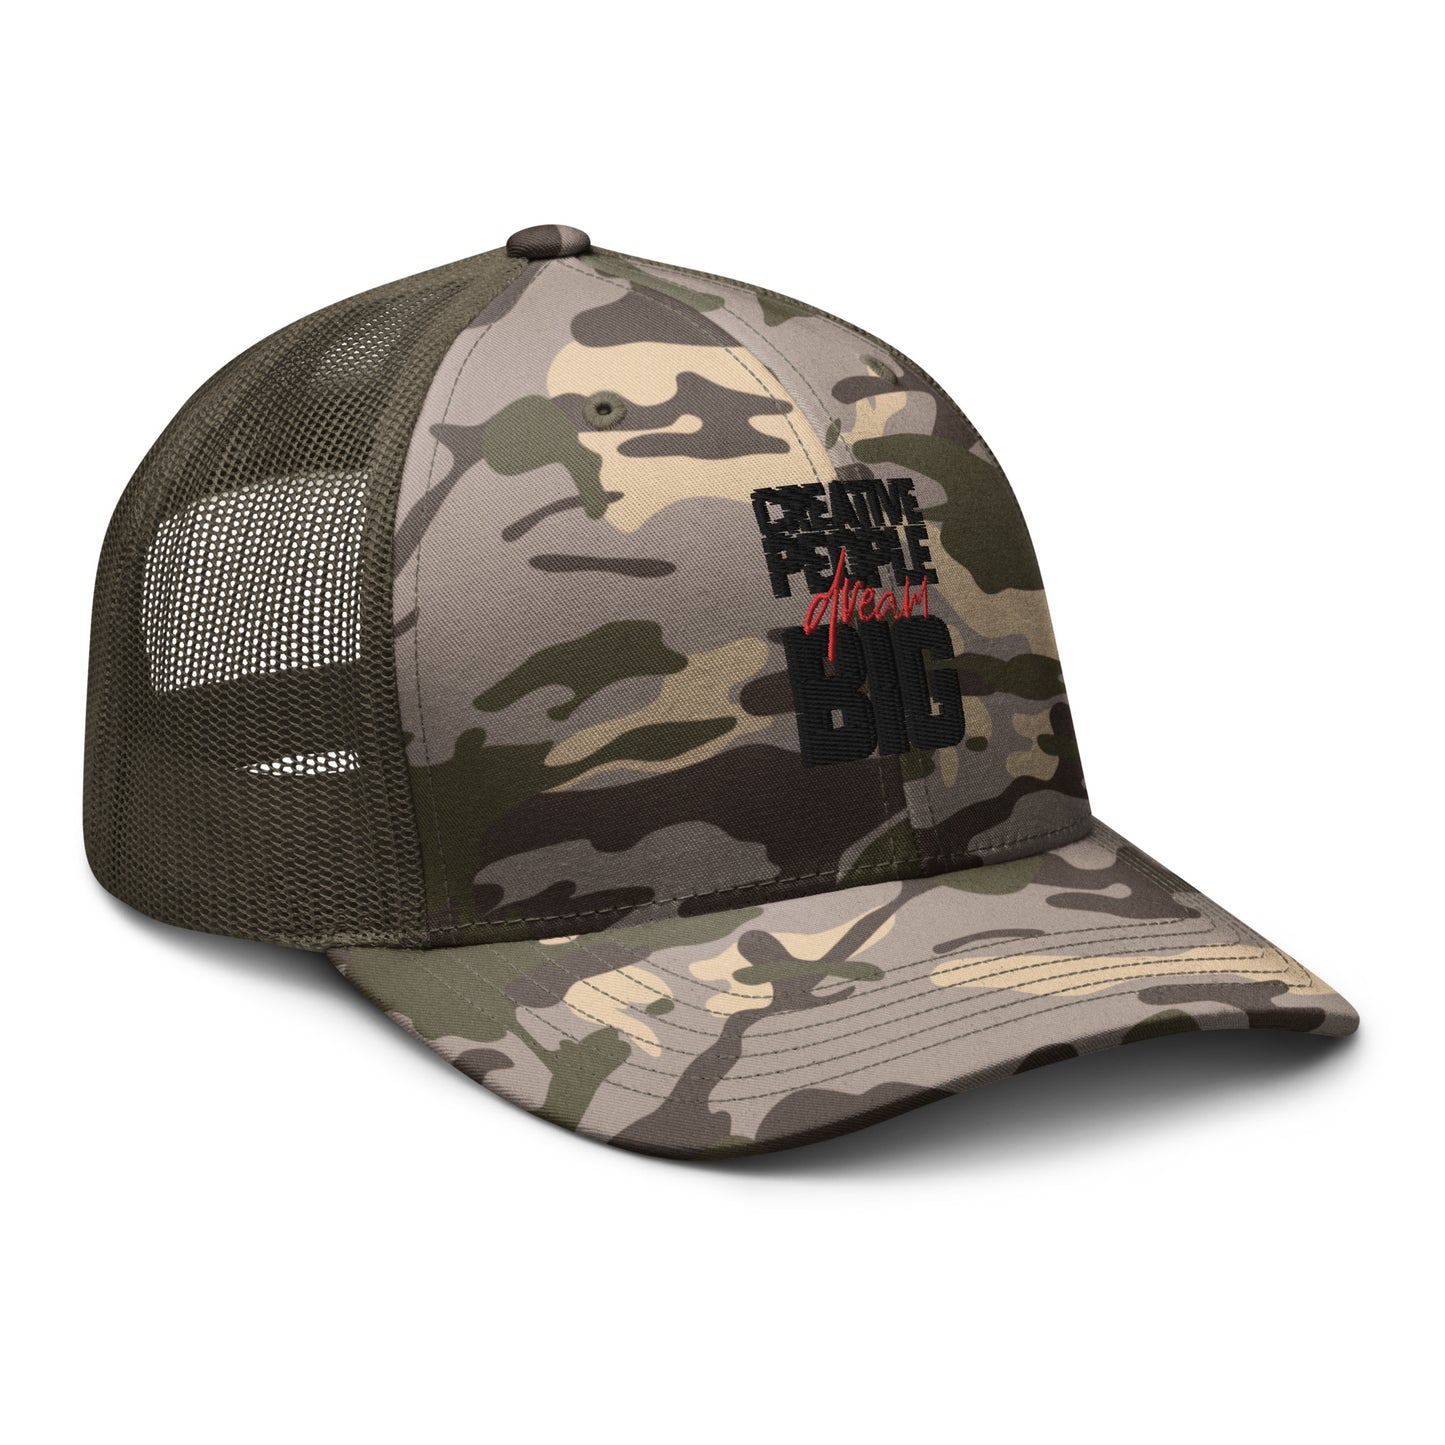 Camouflage Trucker Hat